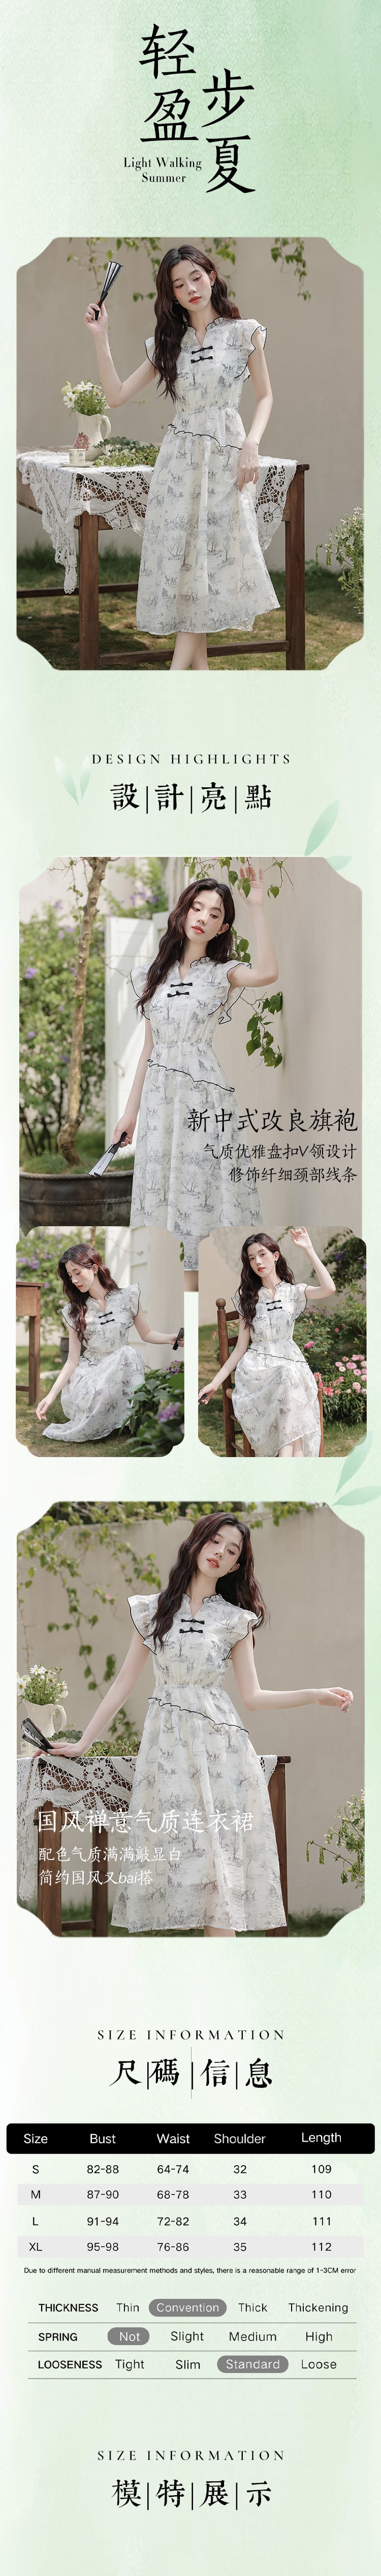 【中国直邮】HSPM新款气质连衣裙 白色 S